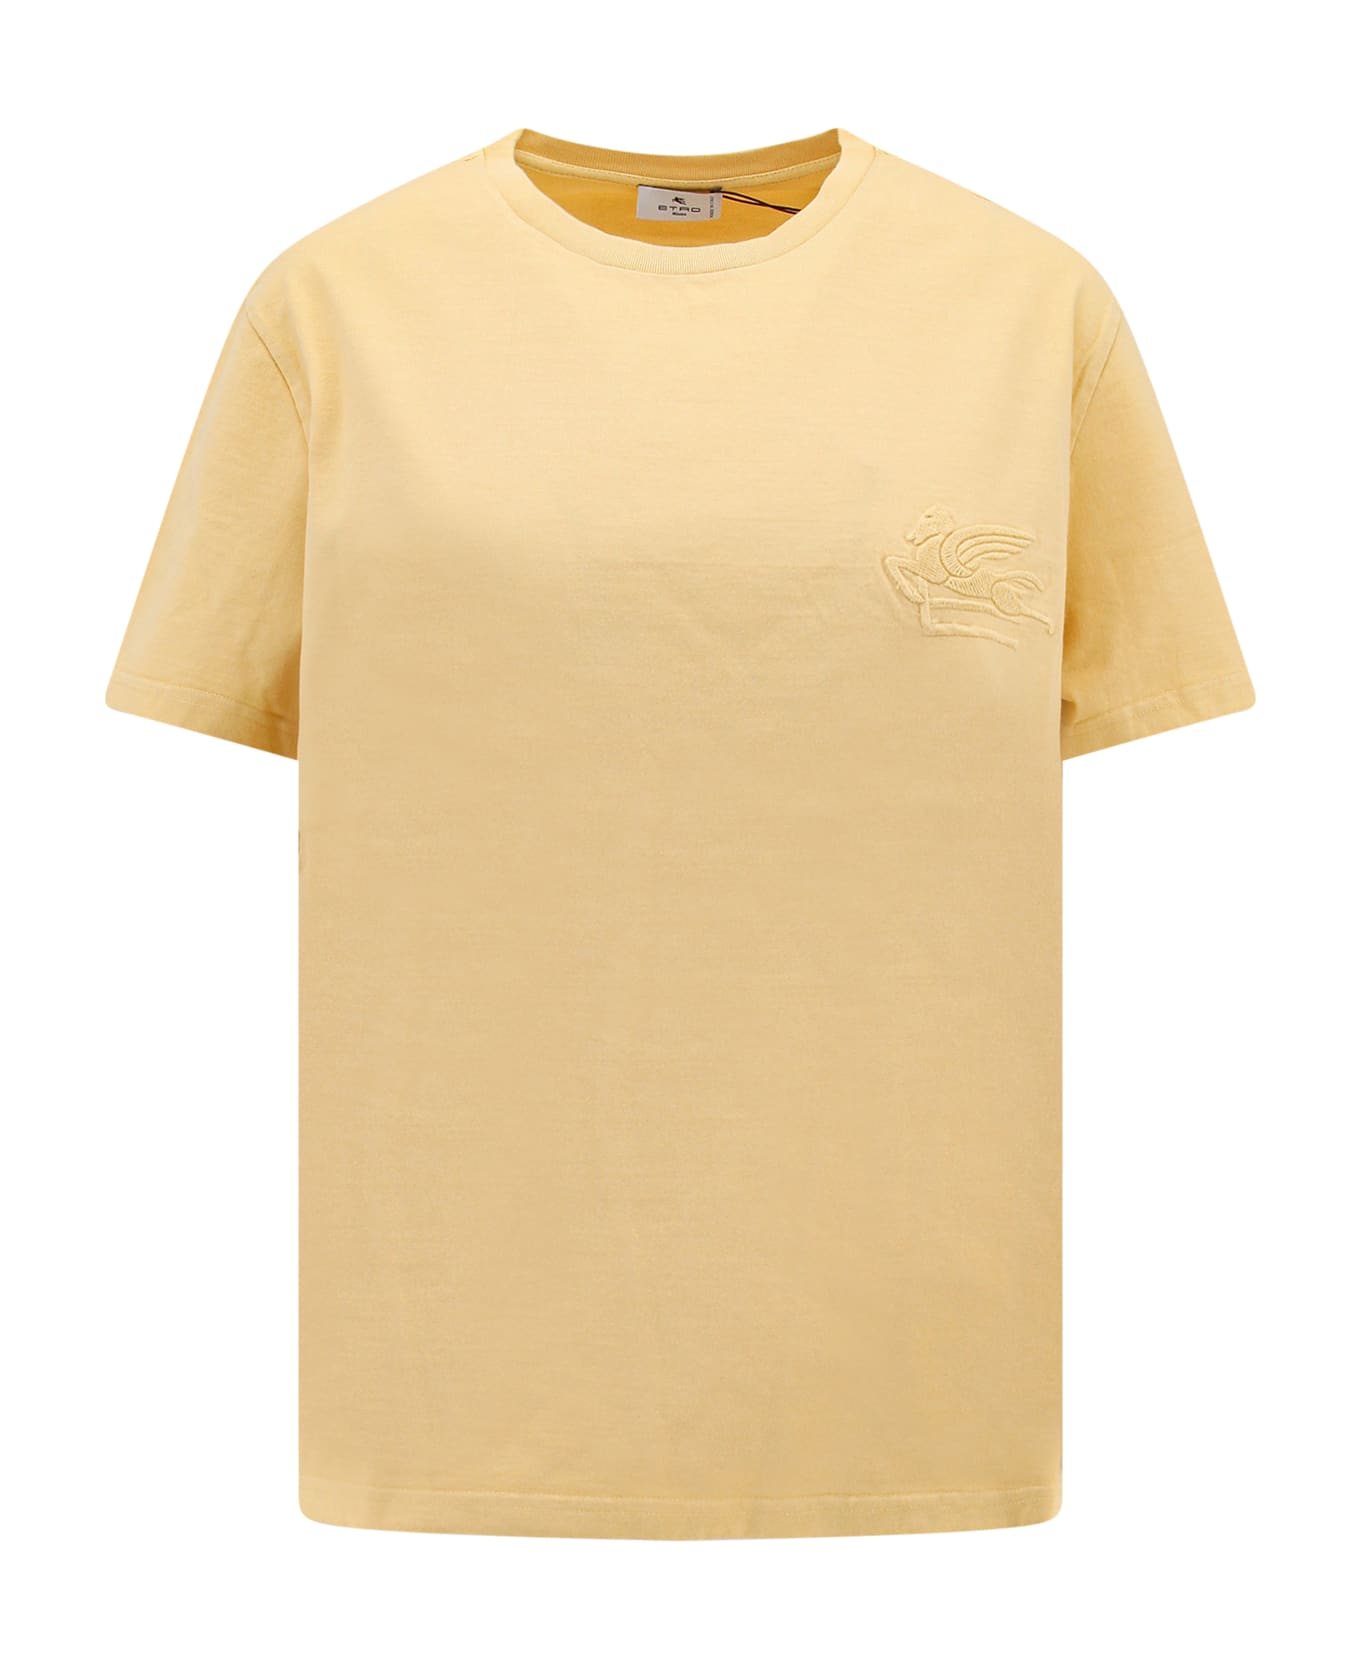 Etro T-shirt - Yellow